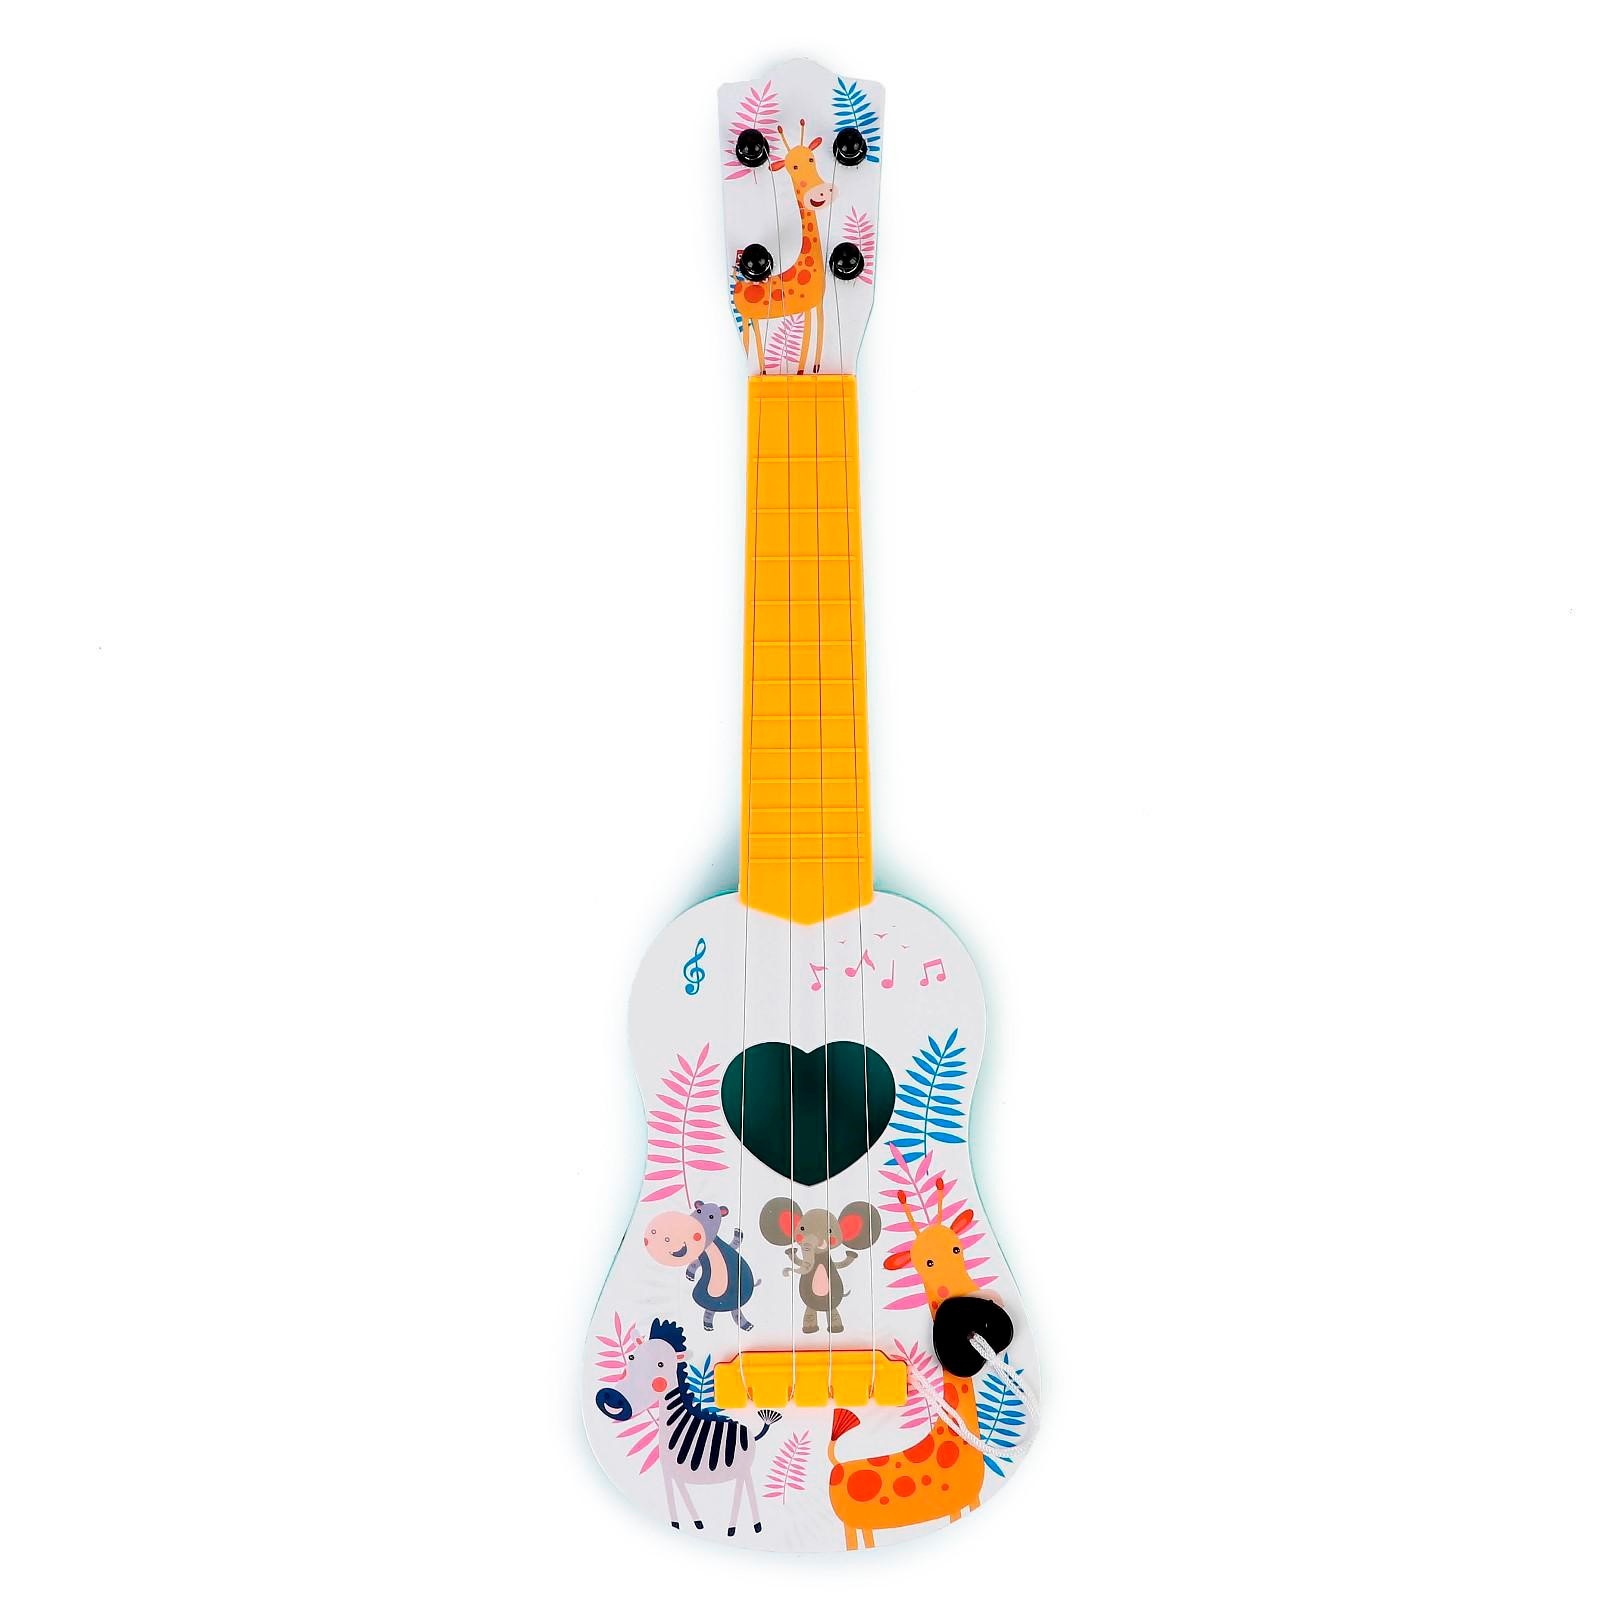 Игрушка музыкальная гитара. Гитара детская игрушечная со струнами. Игрушечная гитара купить.